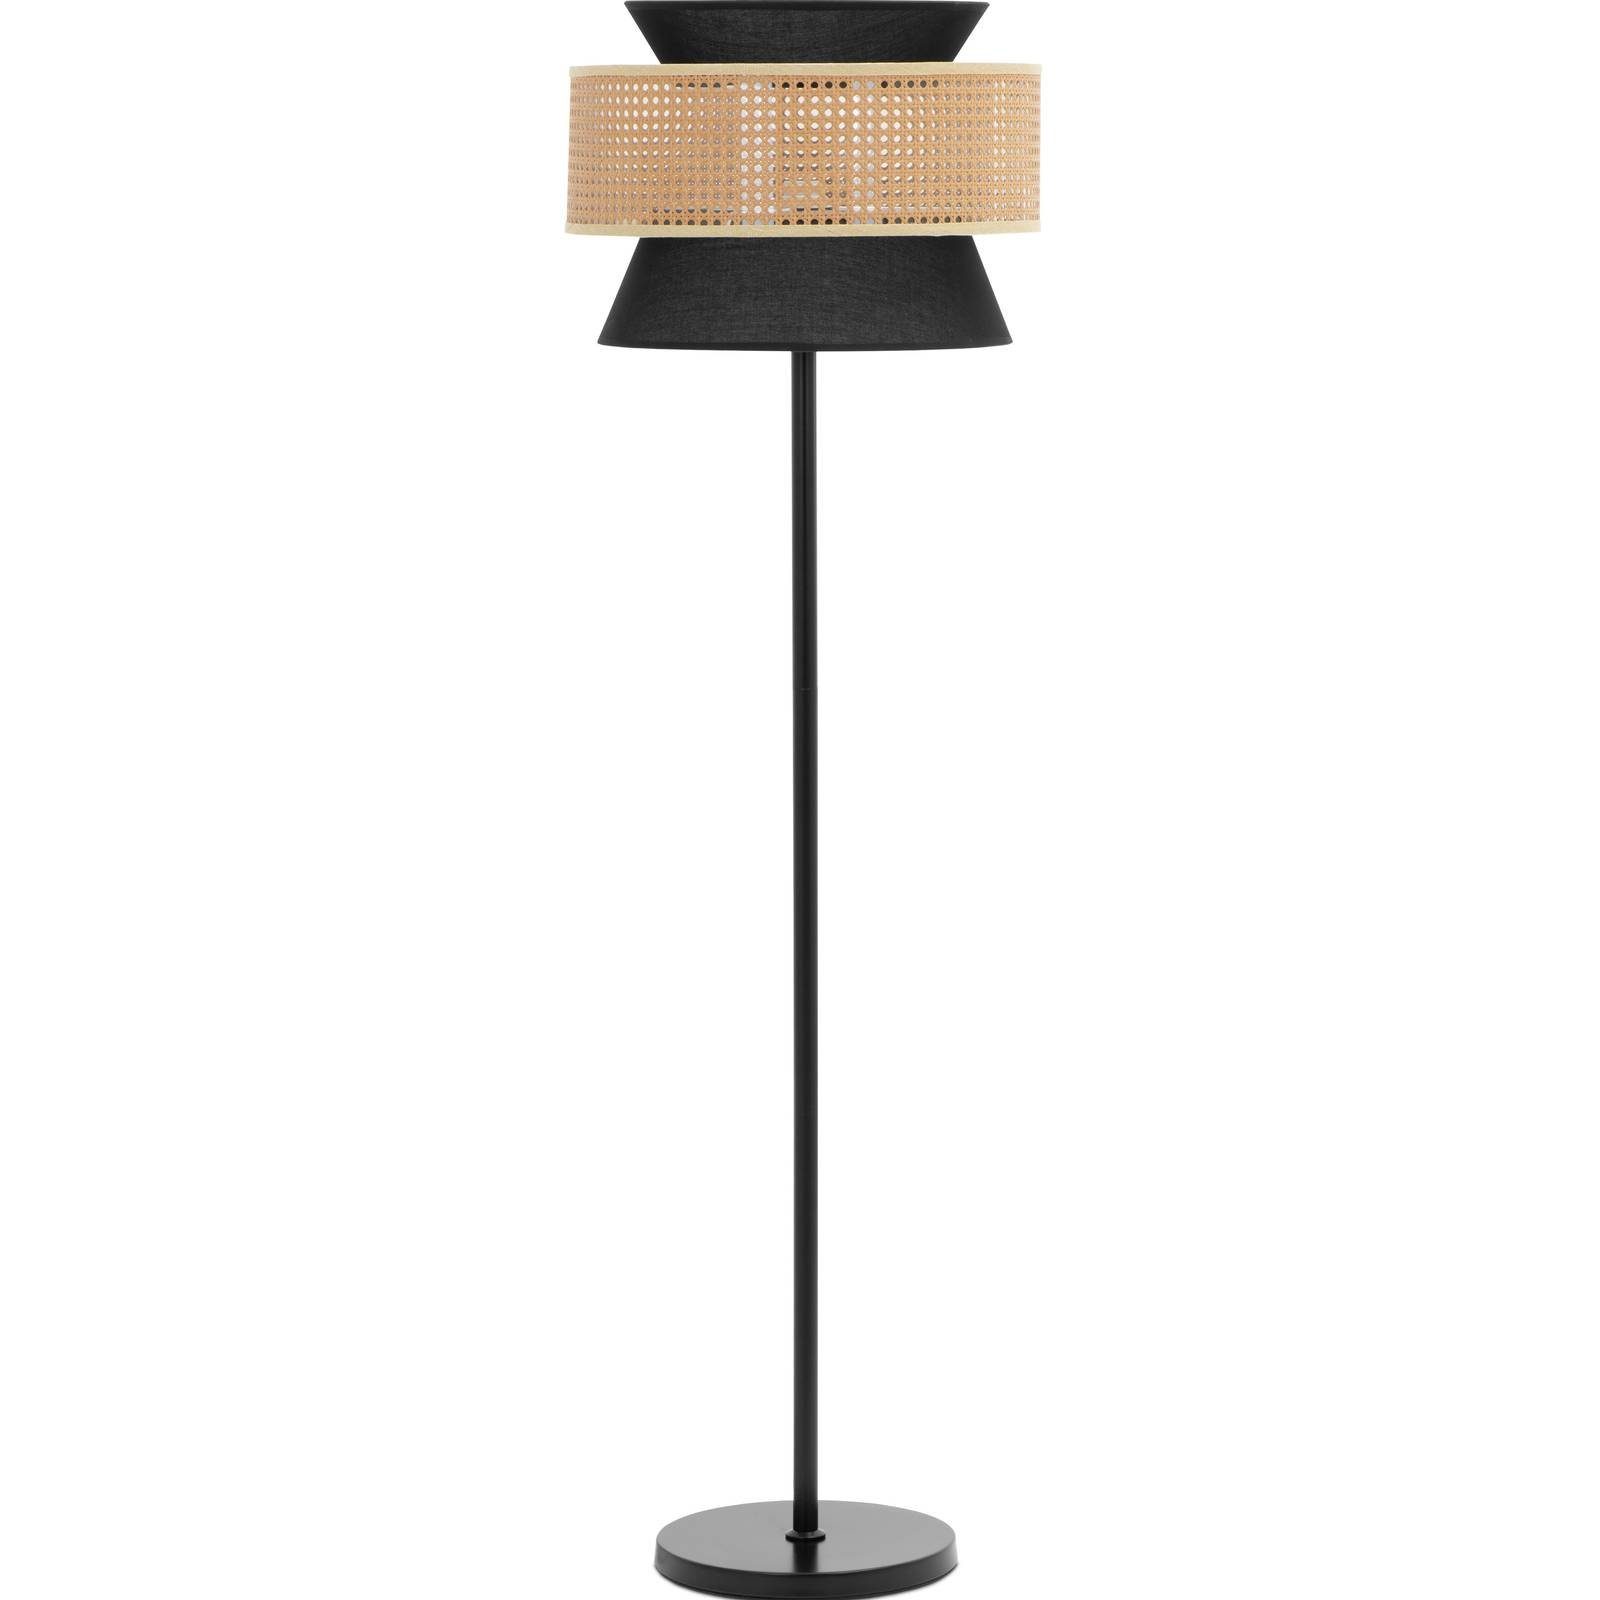 Uniprodo Stehlampe Stehlampe Rattanschirm 40 W E27 Stehleuchte Standleuchte modern